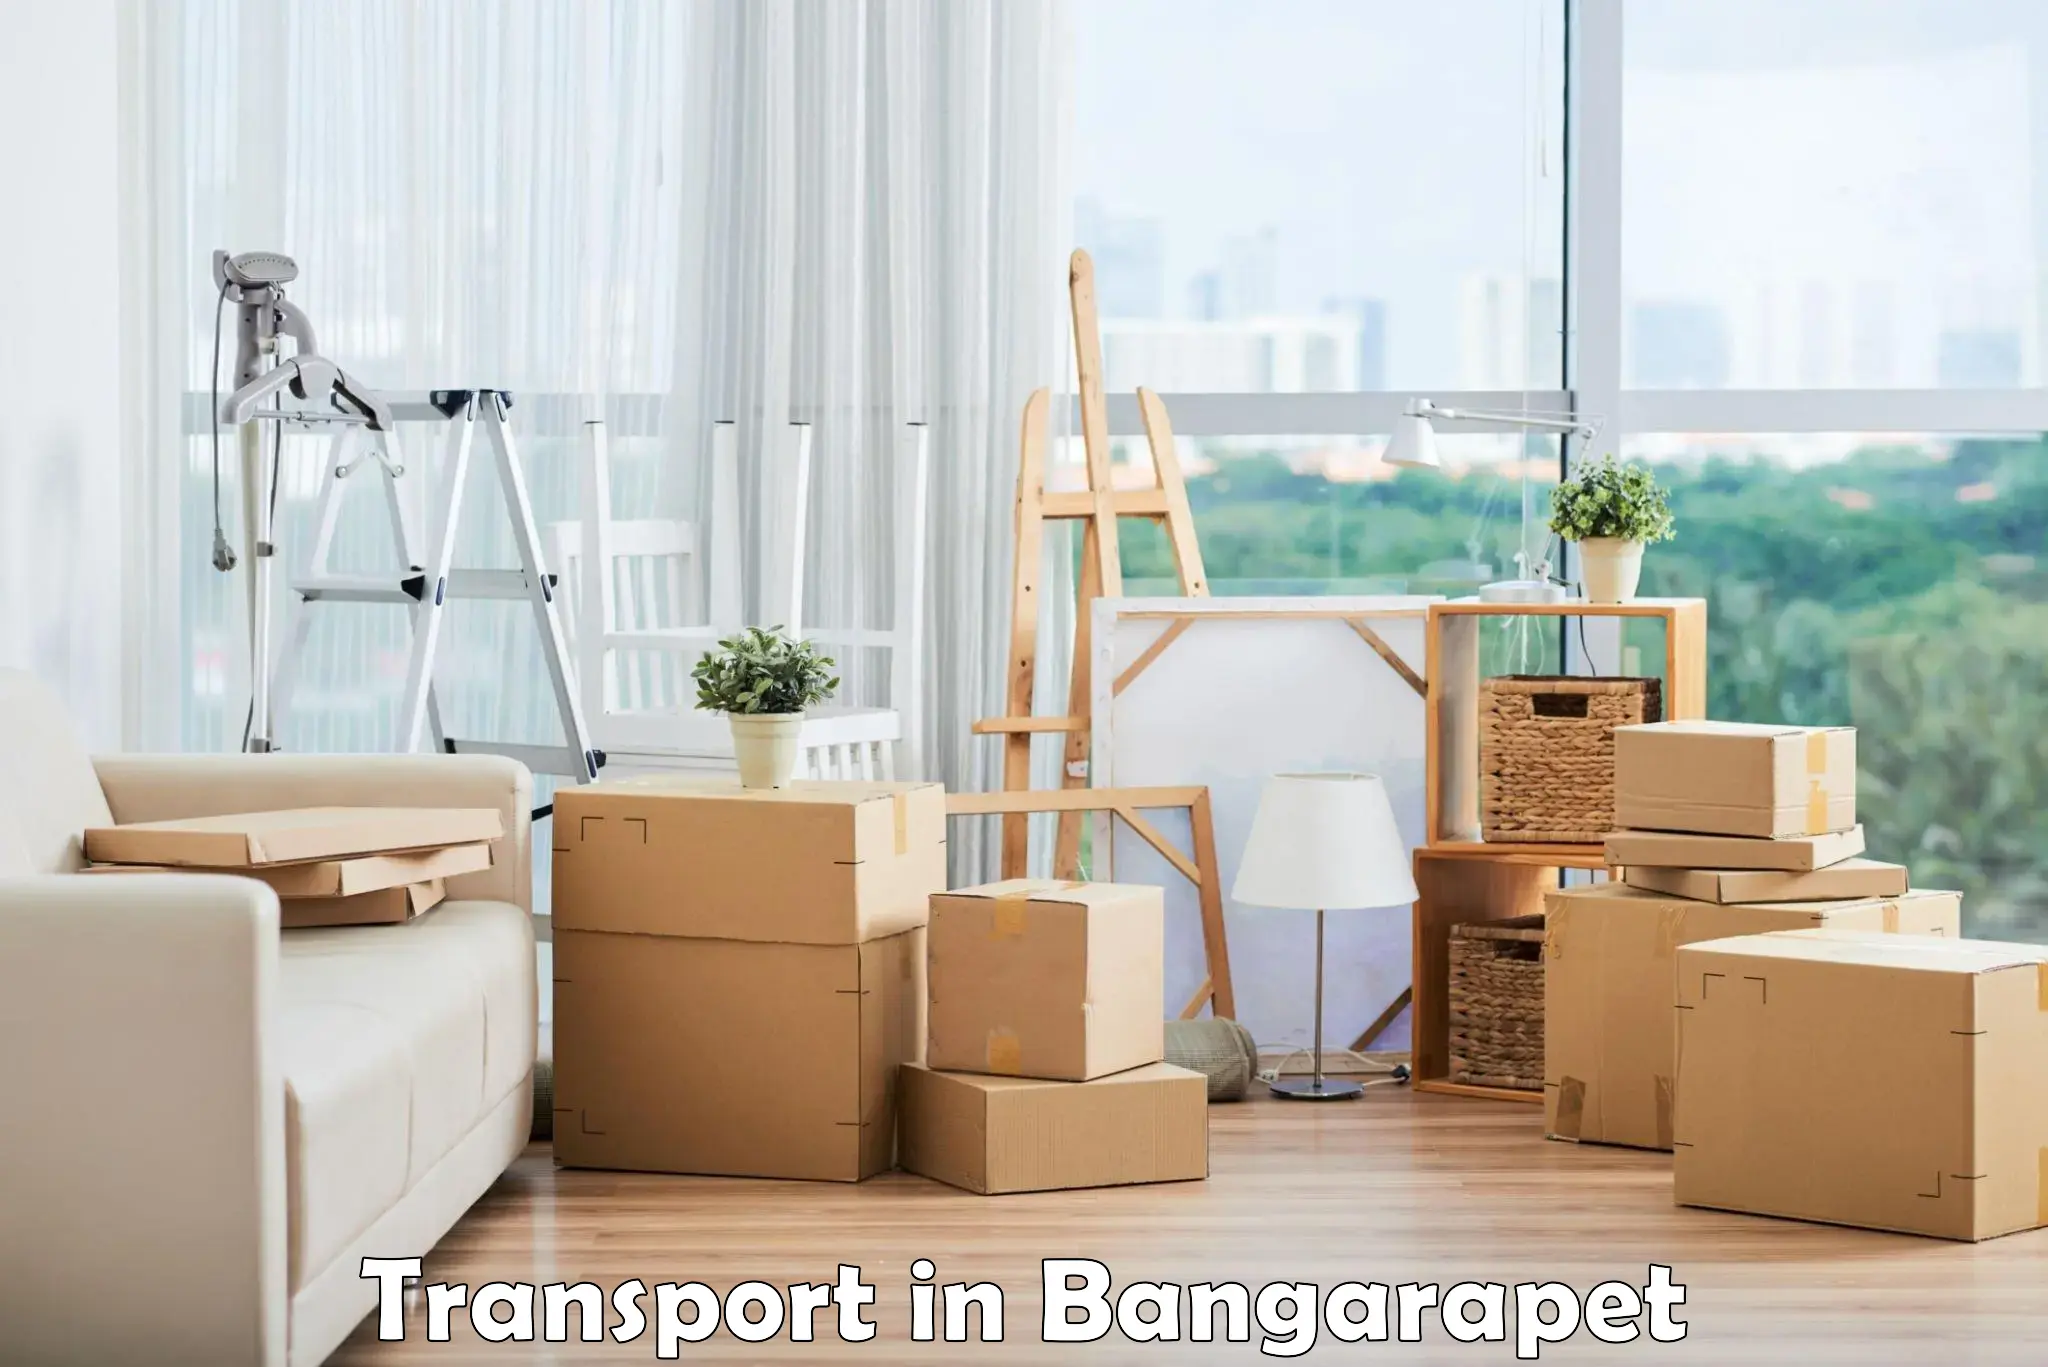 Online transport booking in Bangarapet